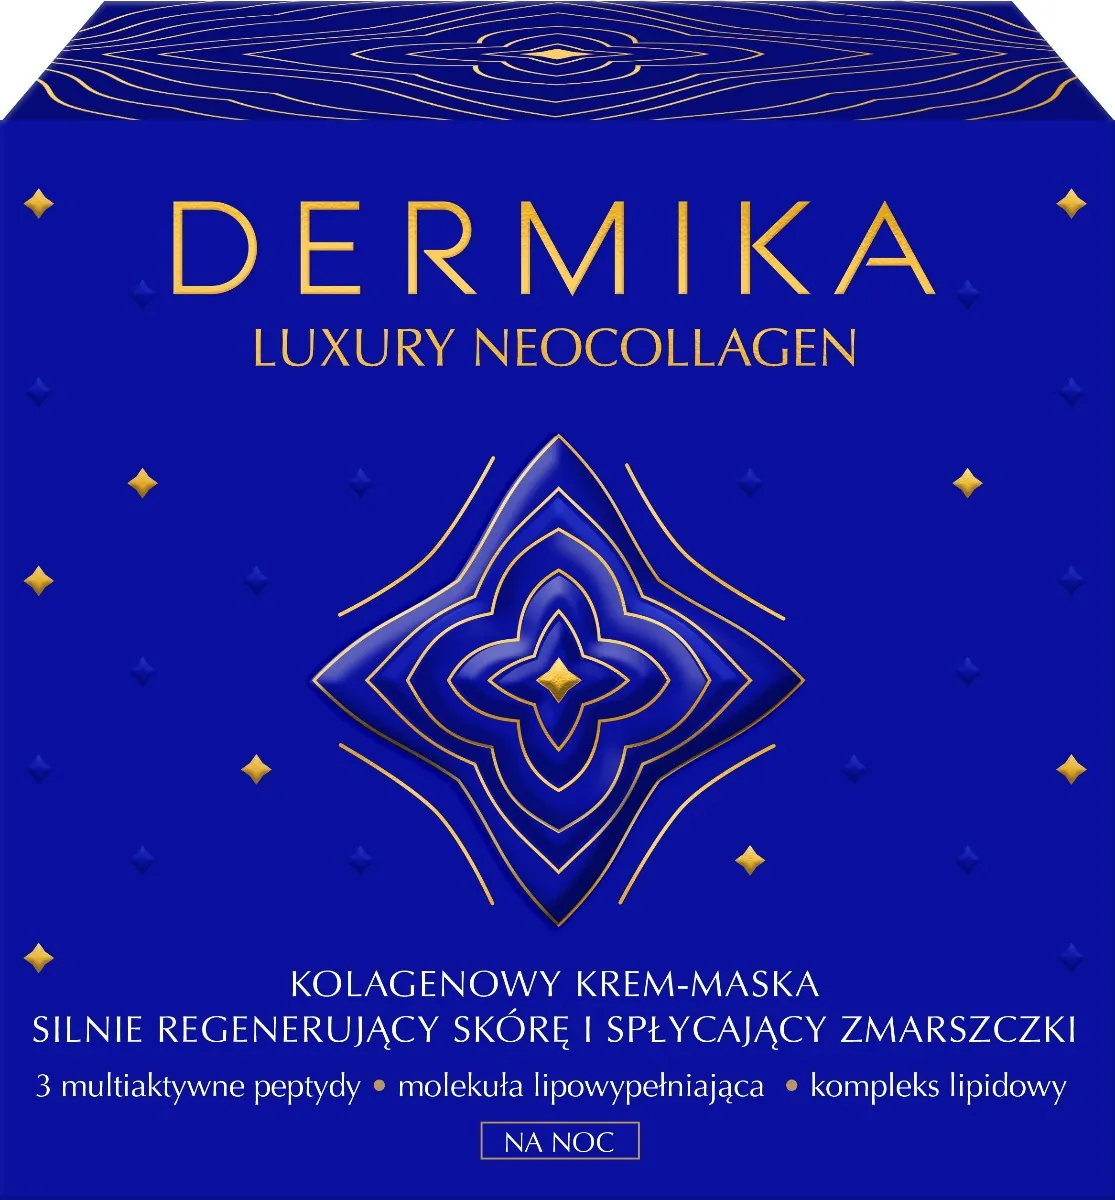 Dermika Luxury Neocollagen Kolagenowy krem-maska na noc, 50 ml